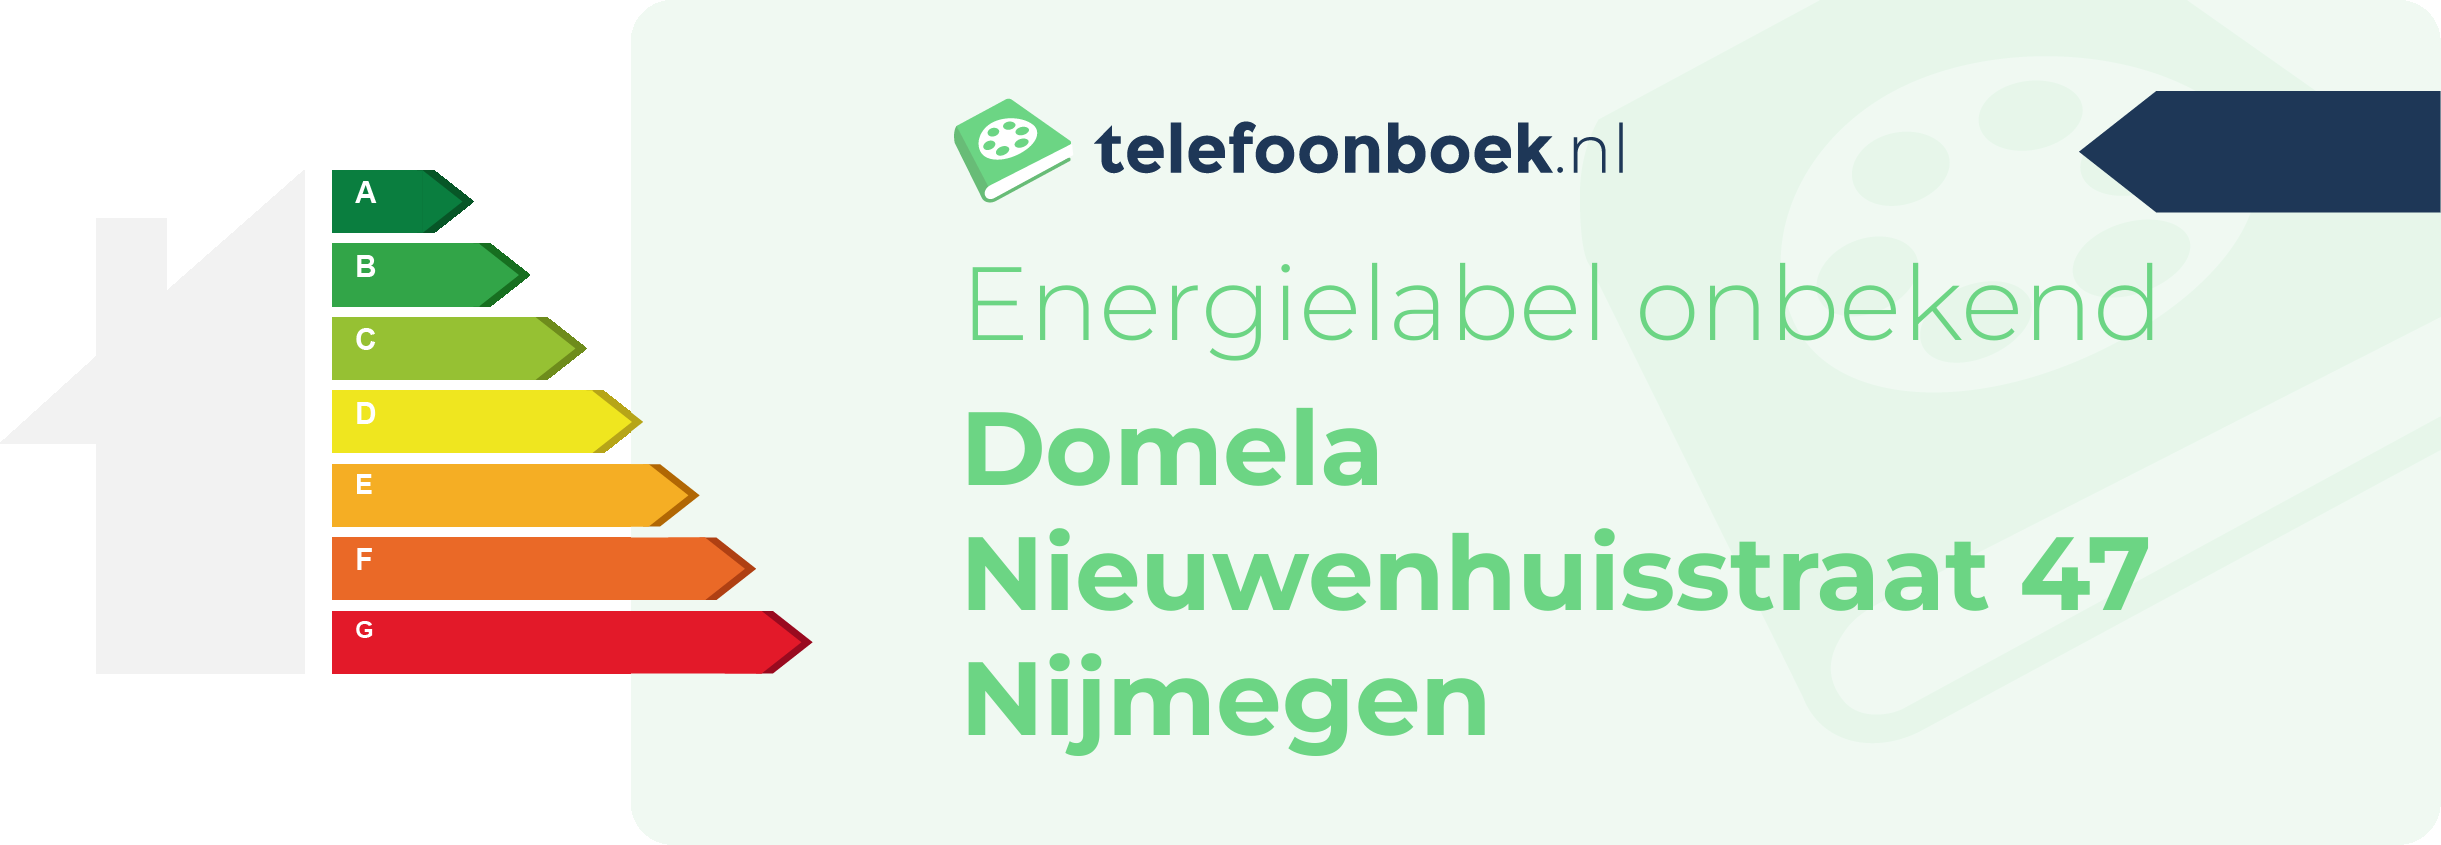 Energielabel Domela Nieuwenhuisstraat 47 Nijmegen